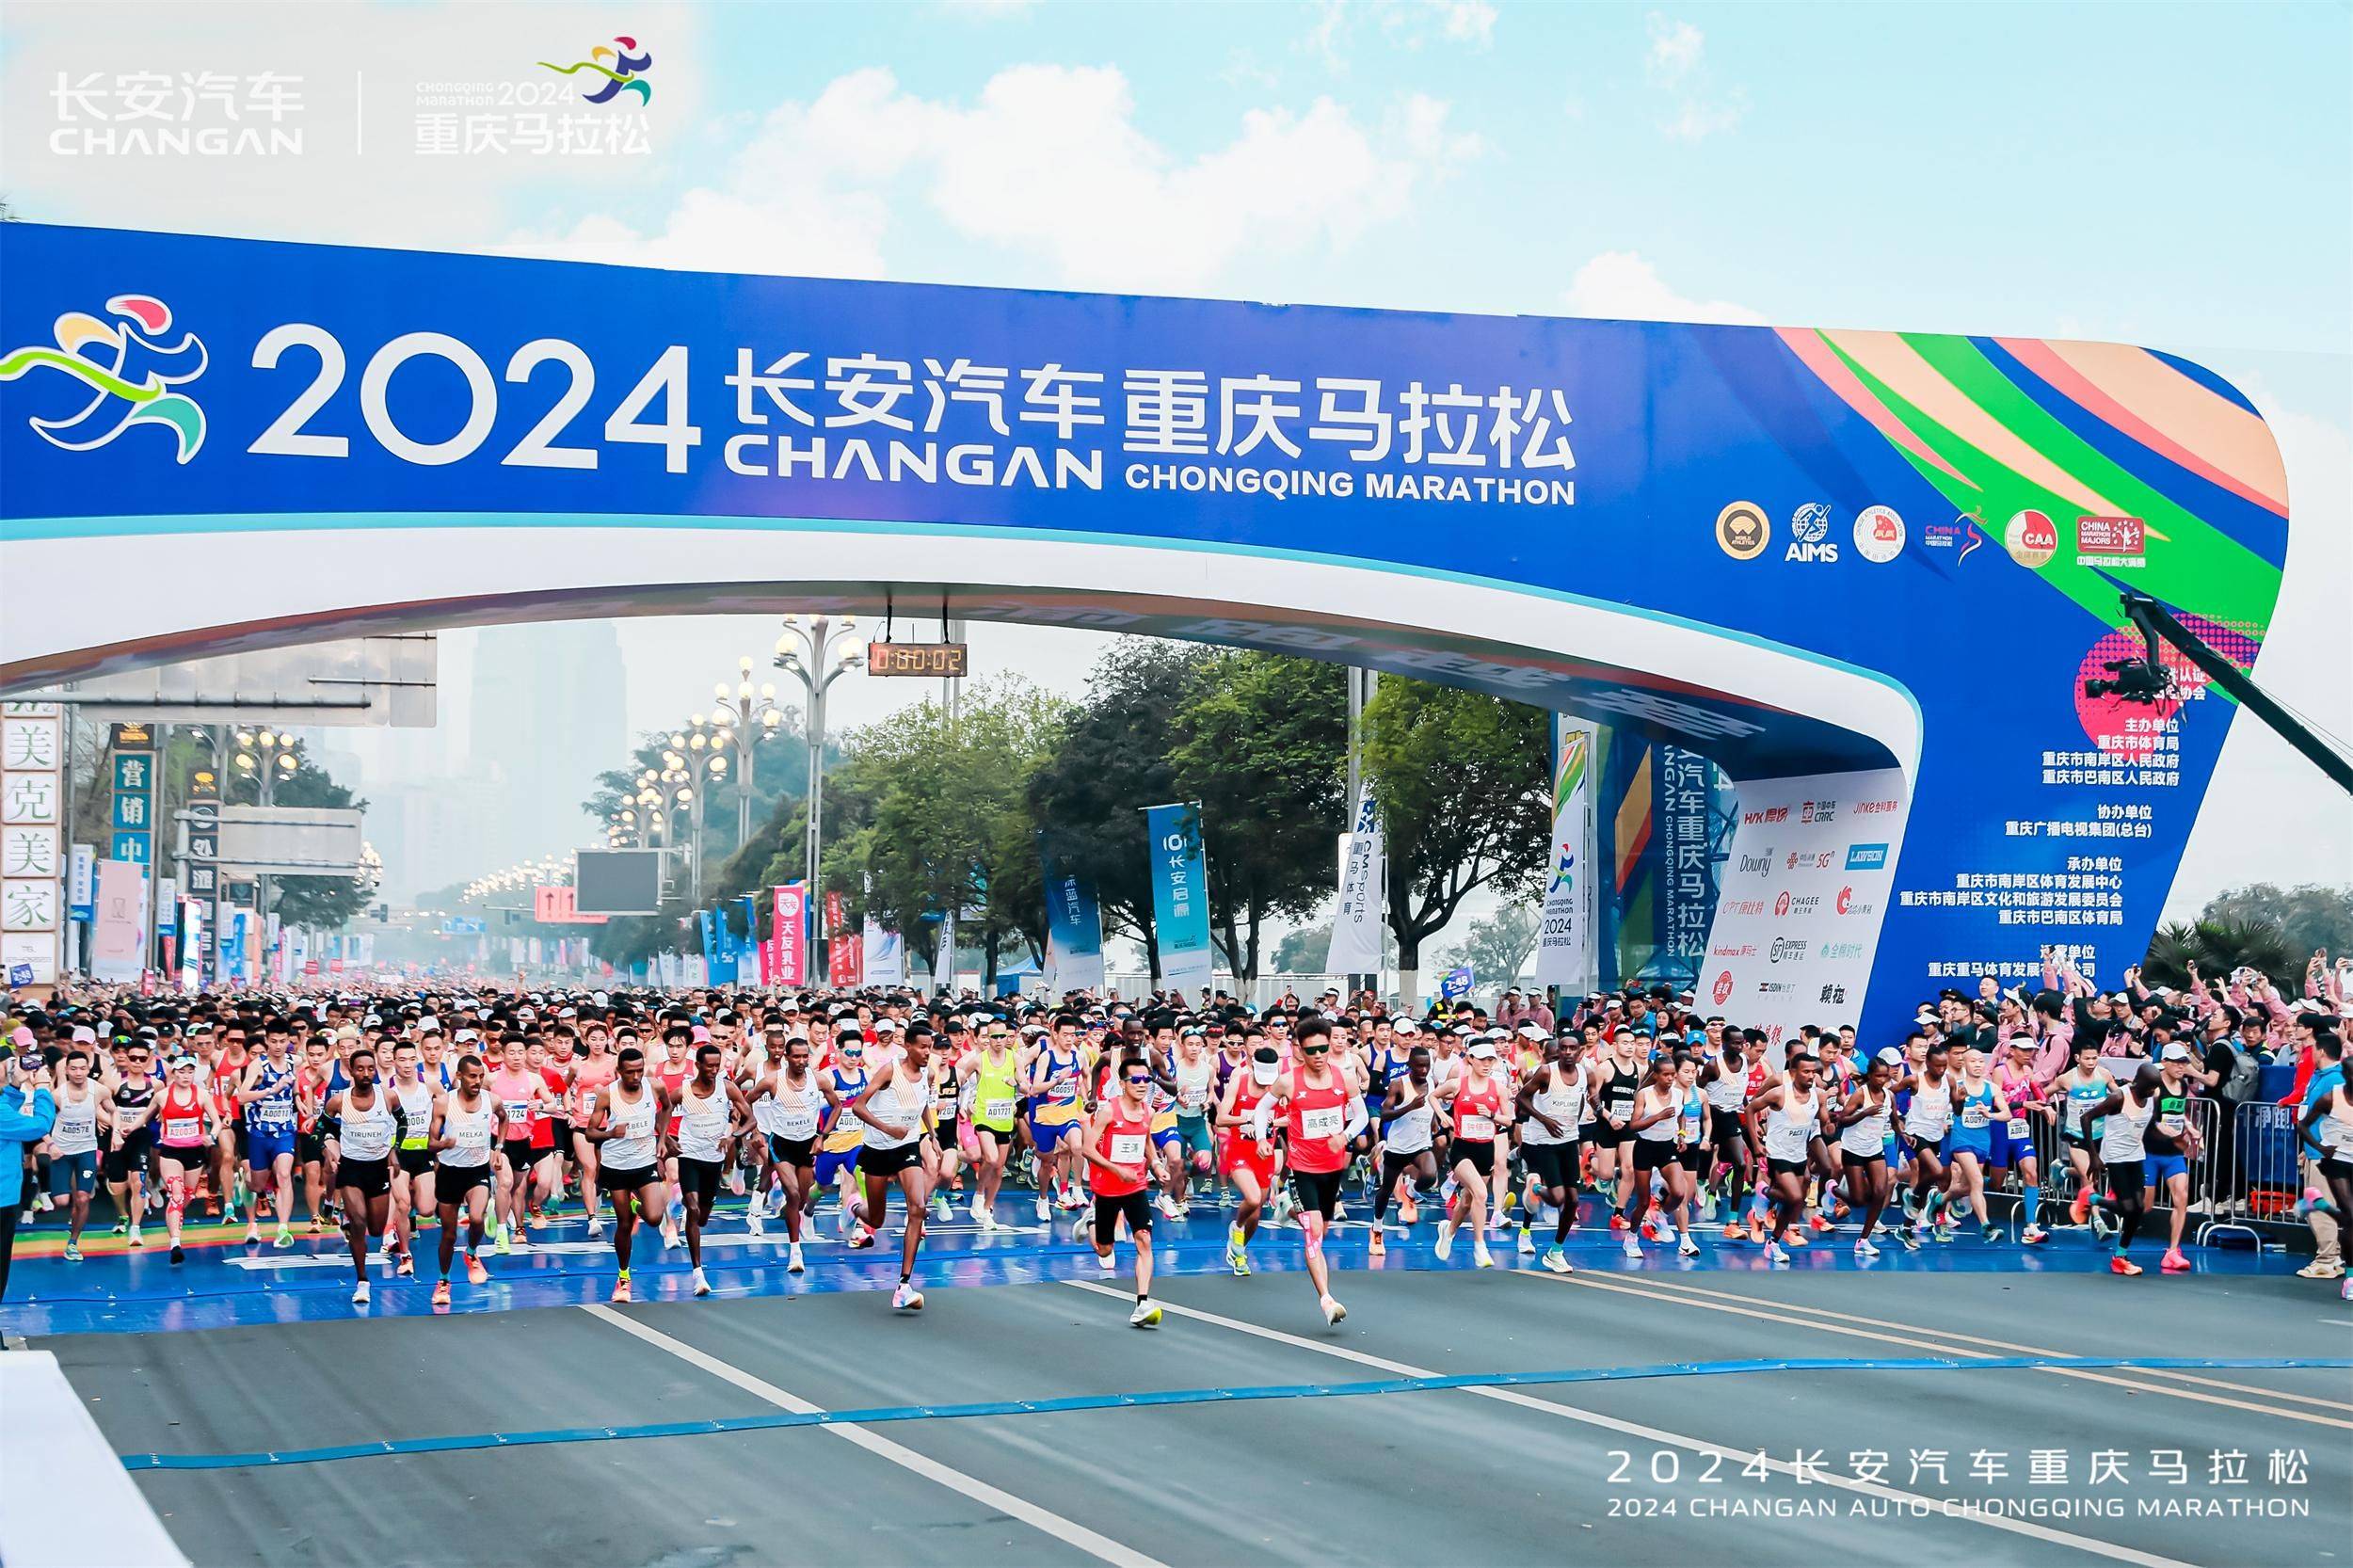 西部第一个全马赛事,发展至今已成为双金赛事和中国马拉松大满贯赛事